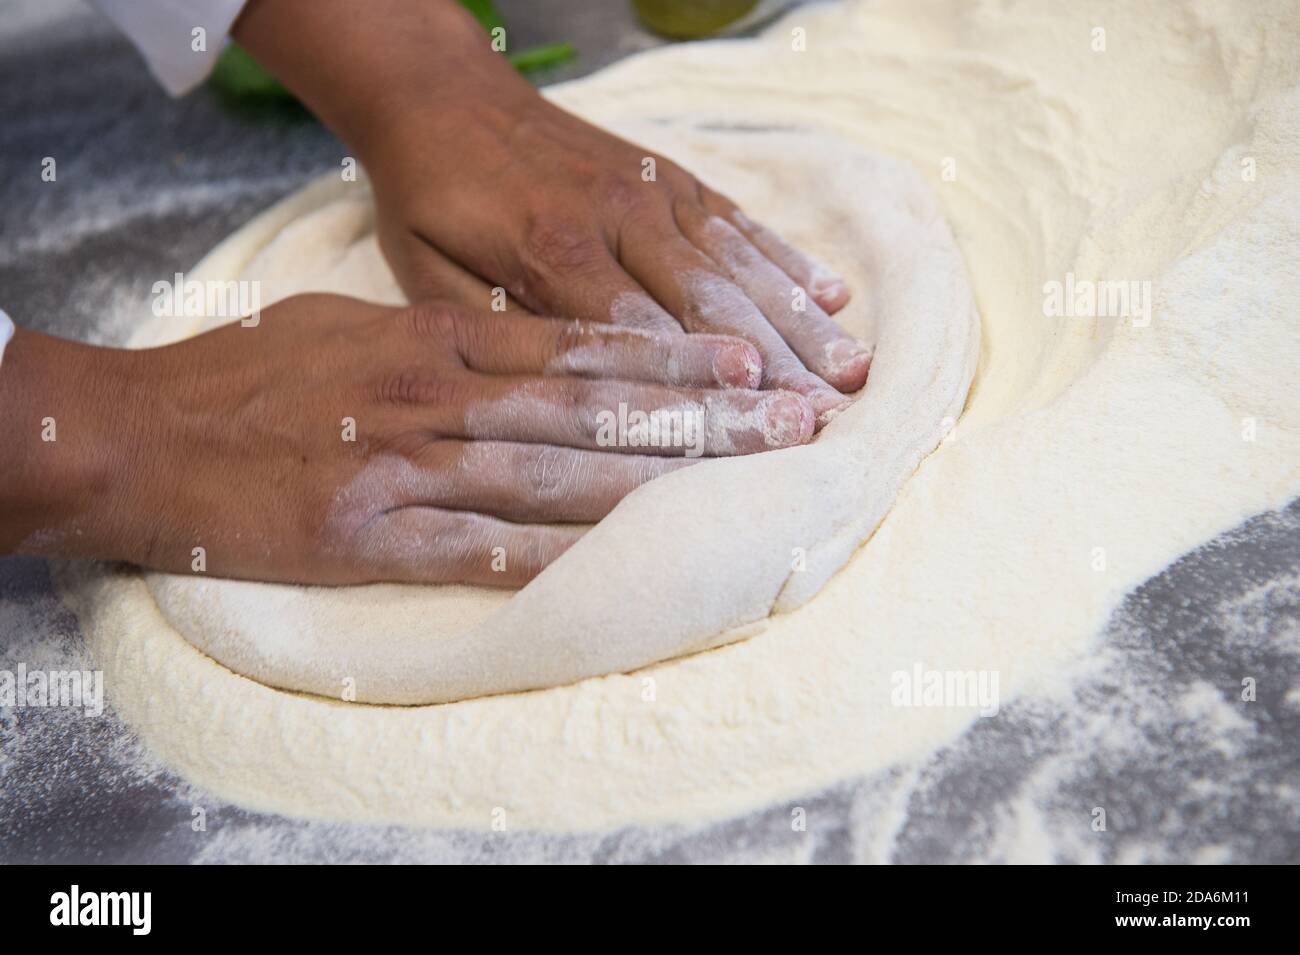 Dettaglio delle mani di uno chef pizzeria che lavora per le varie fasi di preparazione di una vera pizza italiana fatta in casa con farina di lievito e acqua. Foto Stock